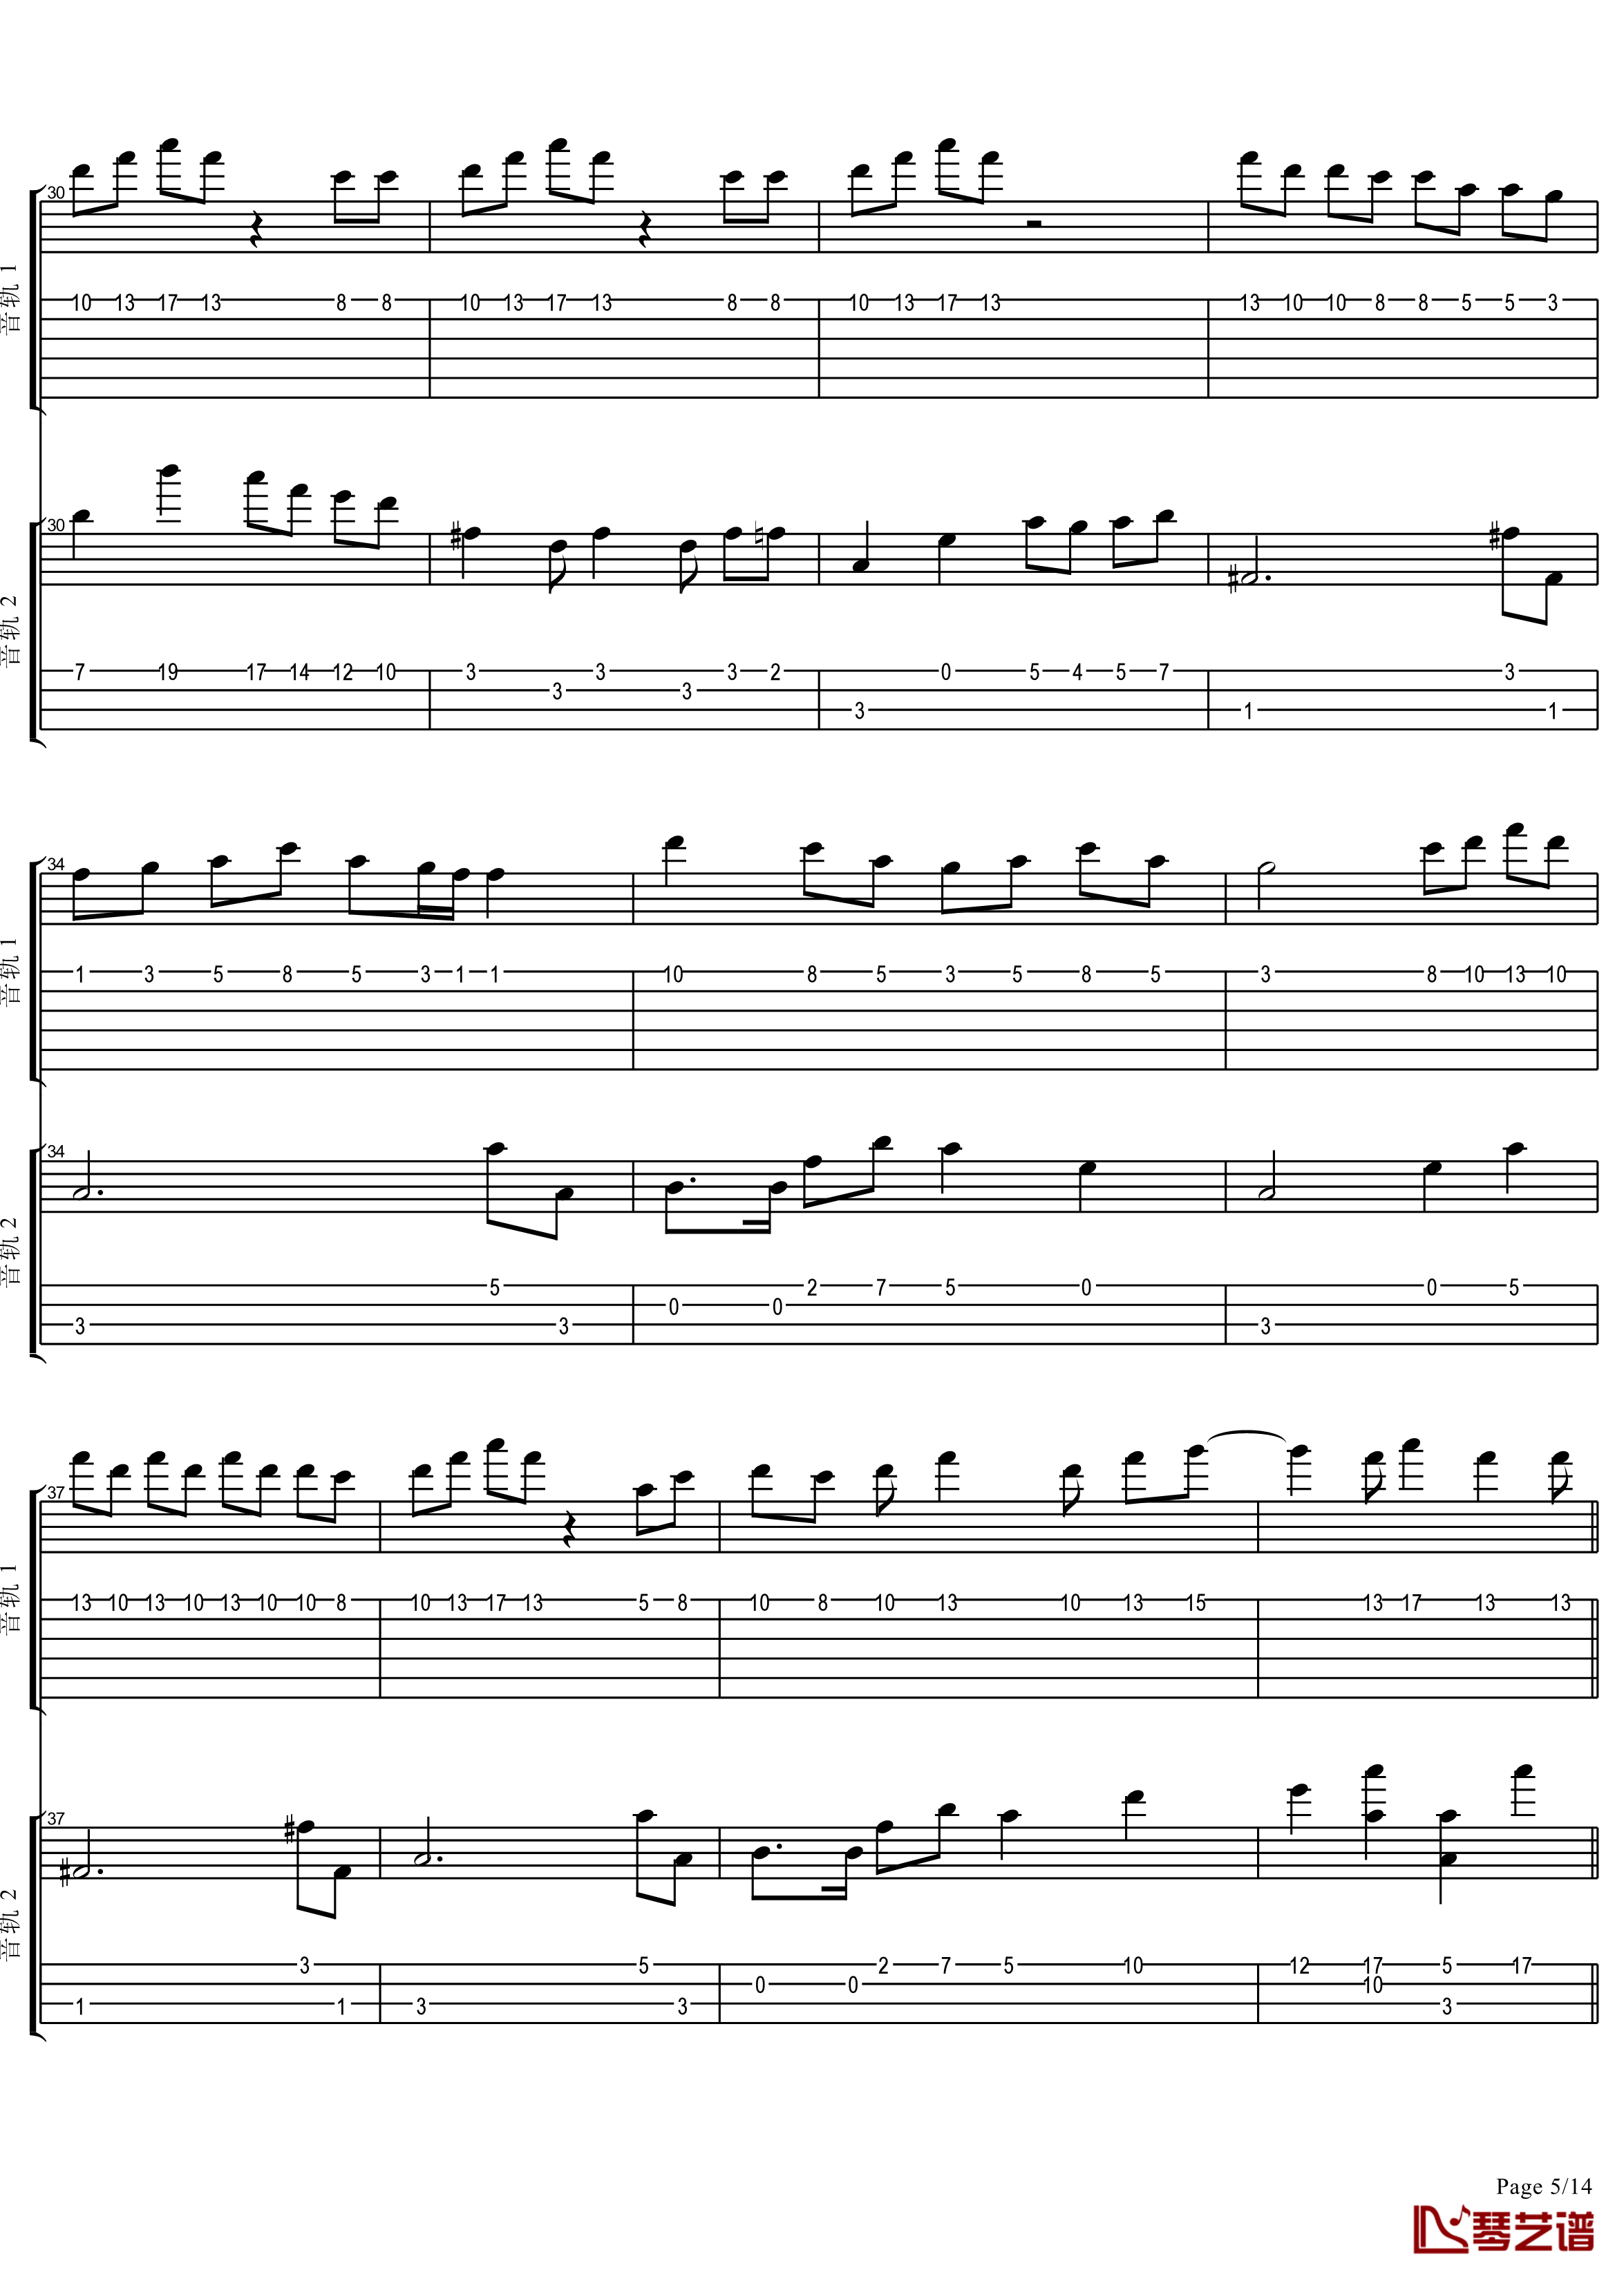 十八般武艺钢琴谱-完美演奏版-王力宏5